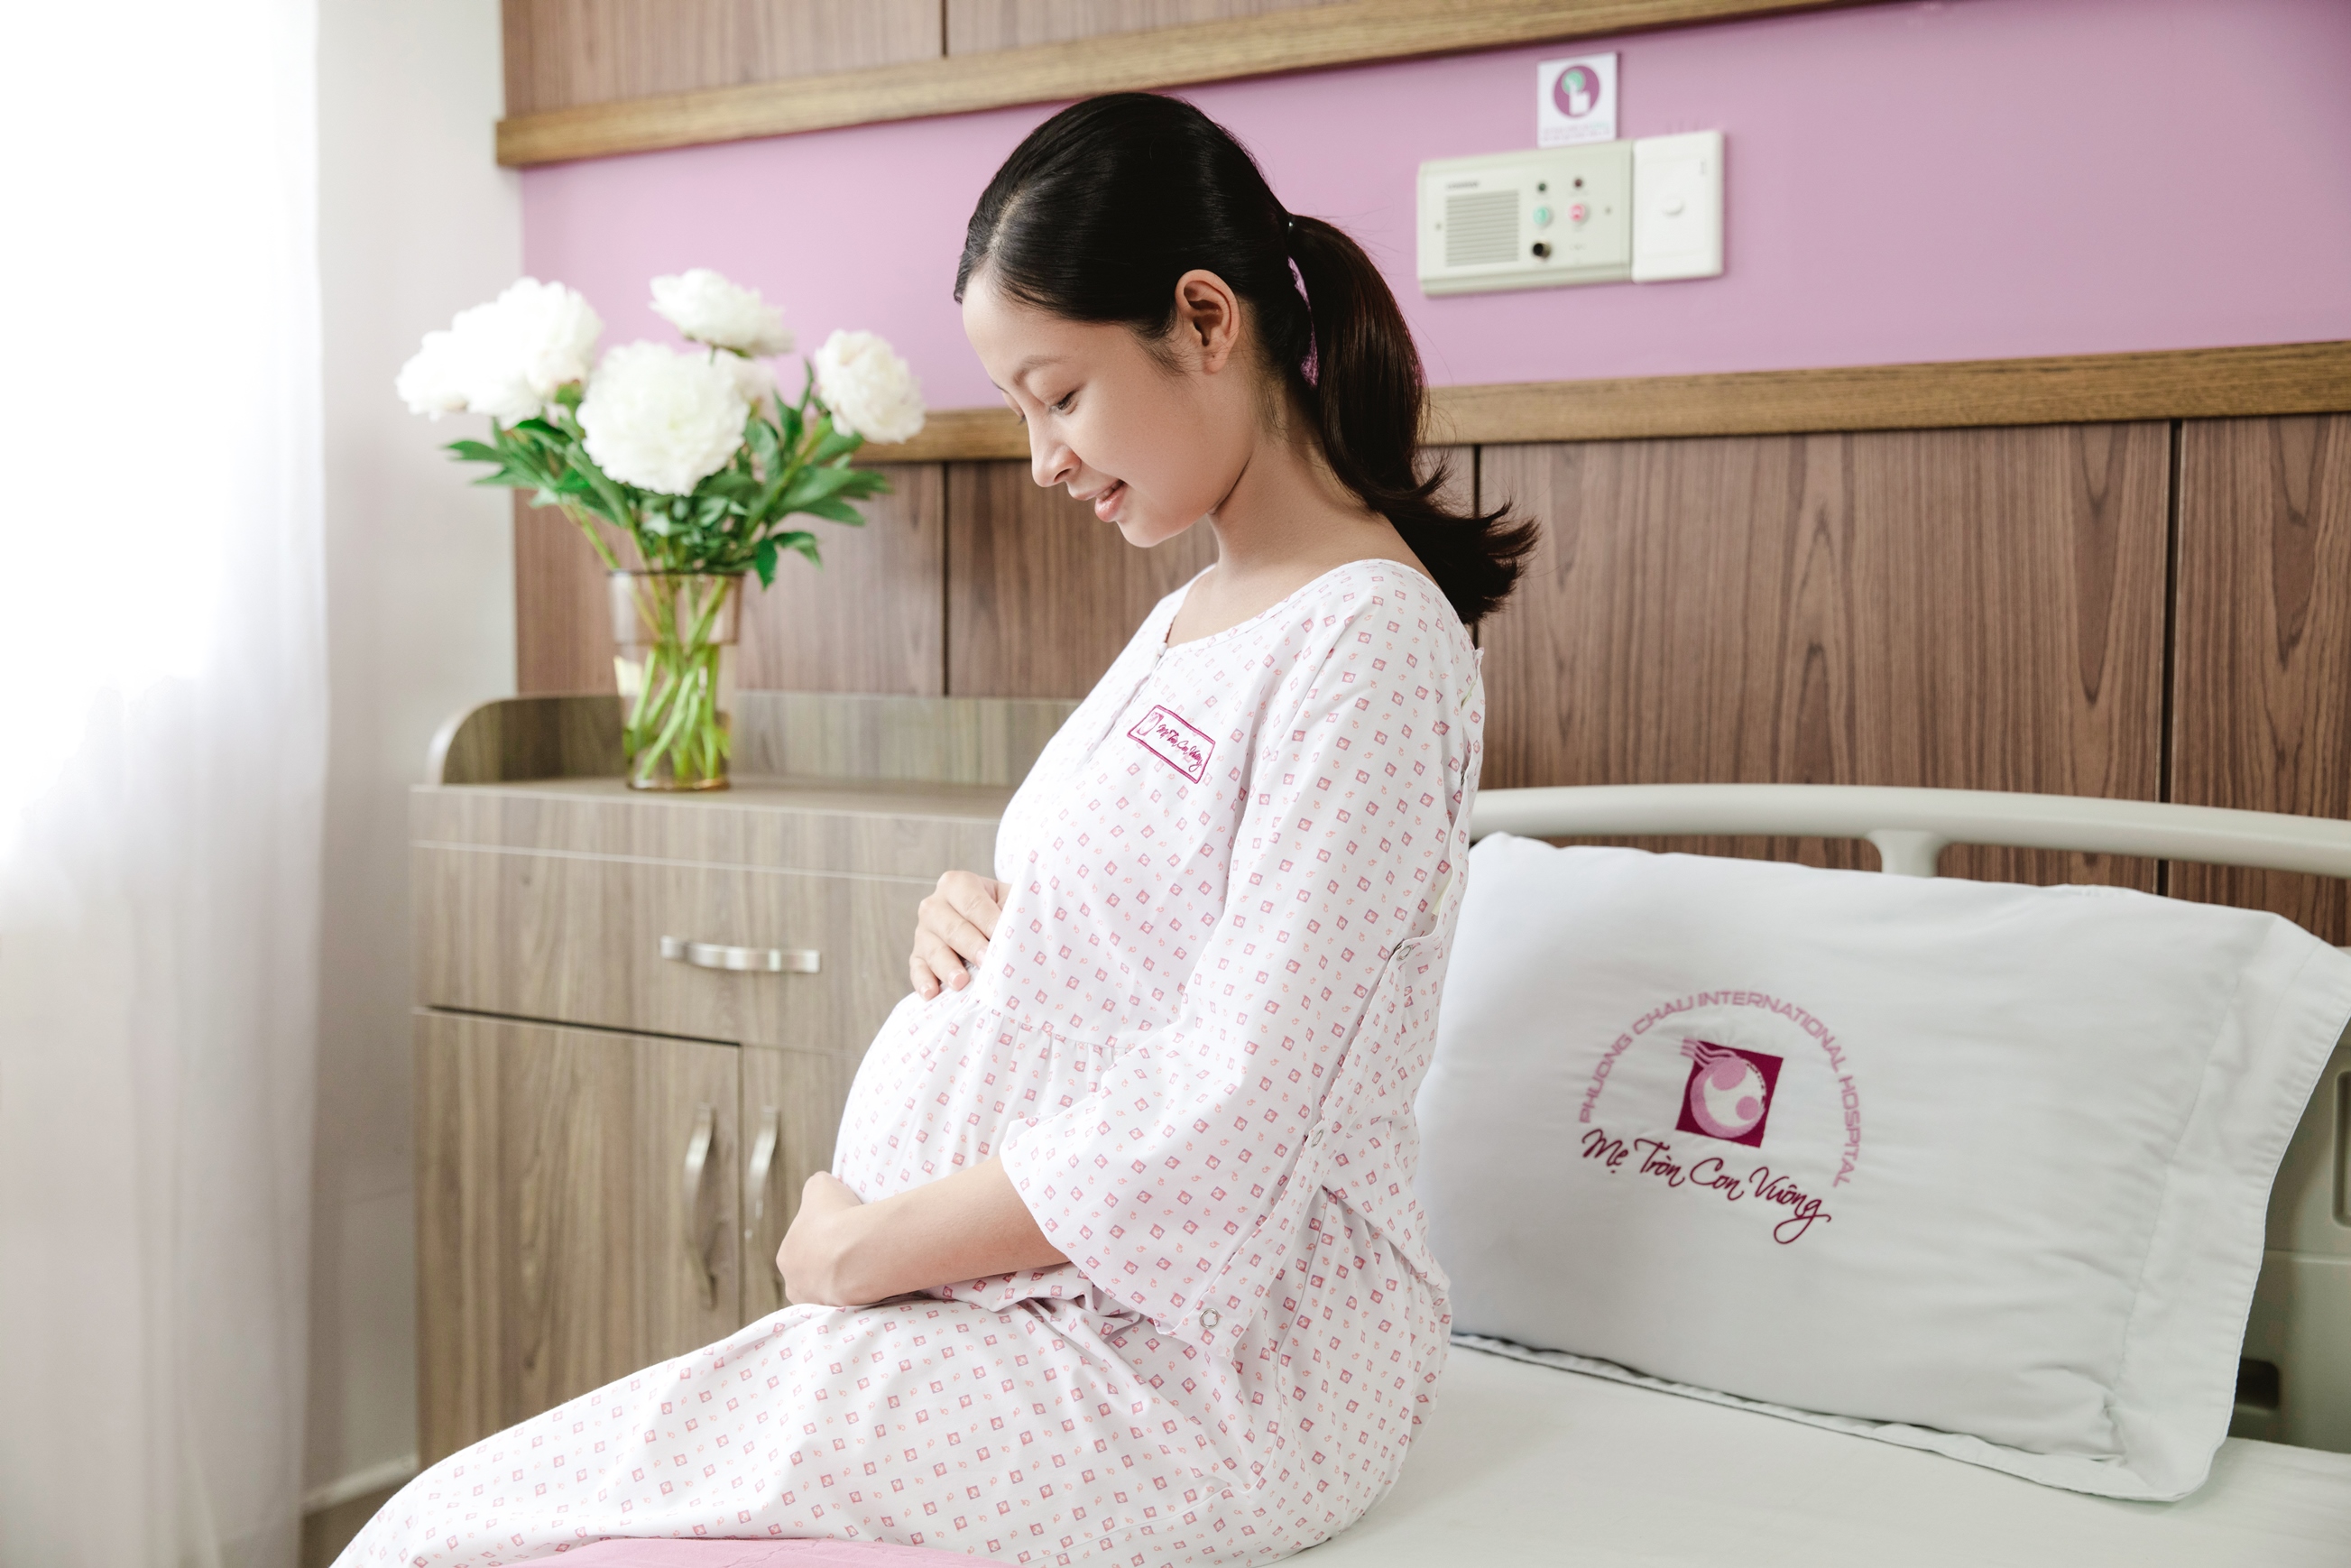 Gói khám thai Phương Châu được xây dựng với mong muốn đồng hành cùng các mẹ bầu trải nghiệm thai kỳ trọn vẹn, an toàn theo tiêu chuẩn quốc tế